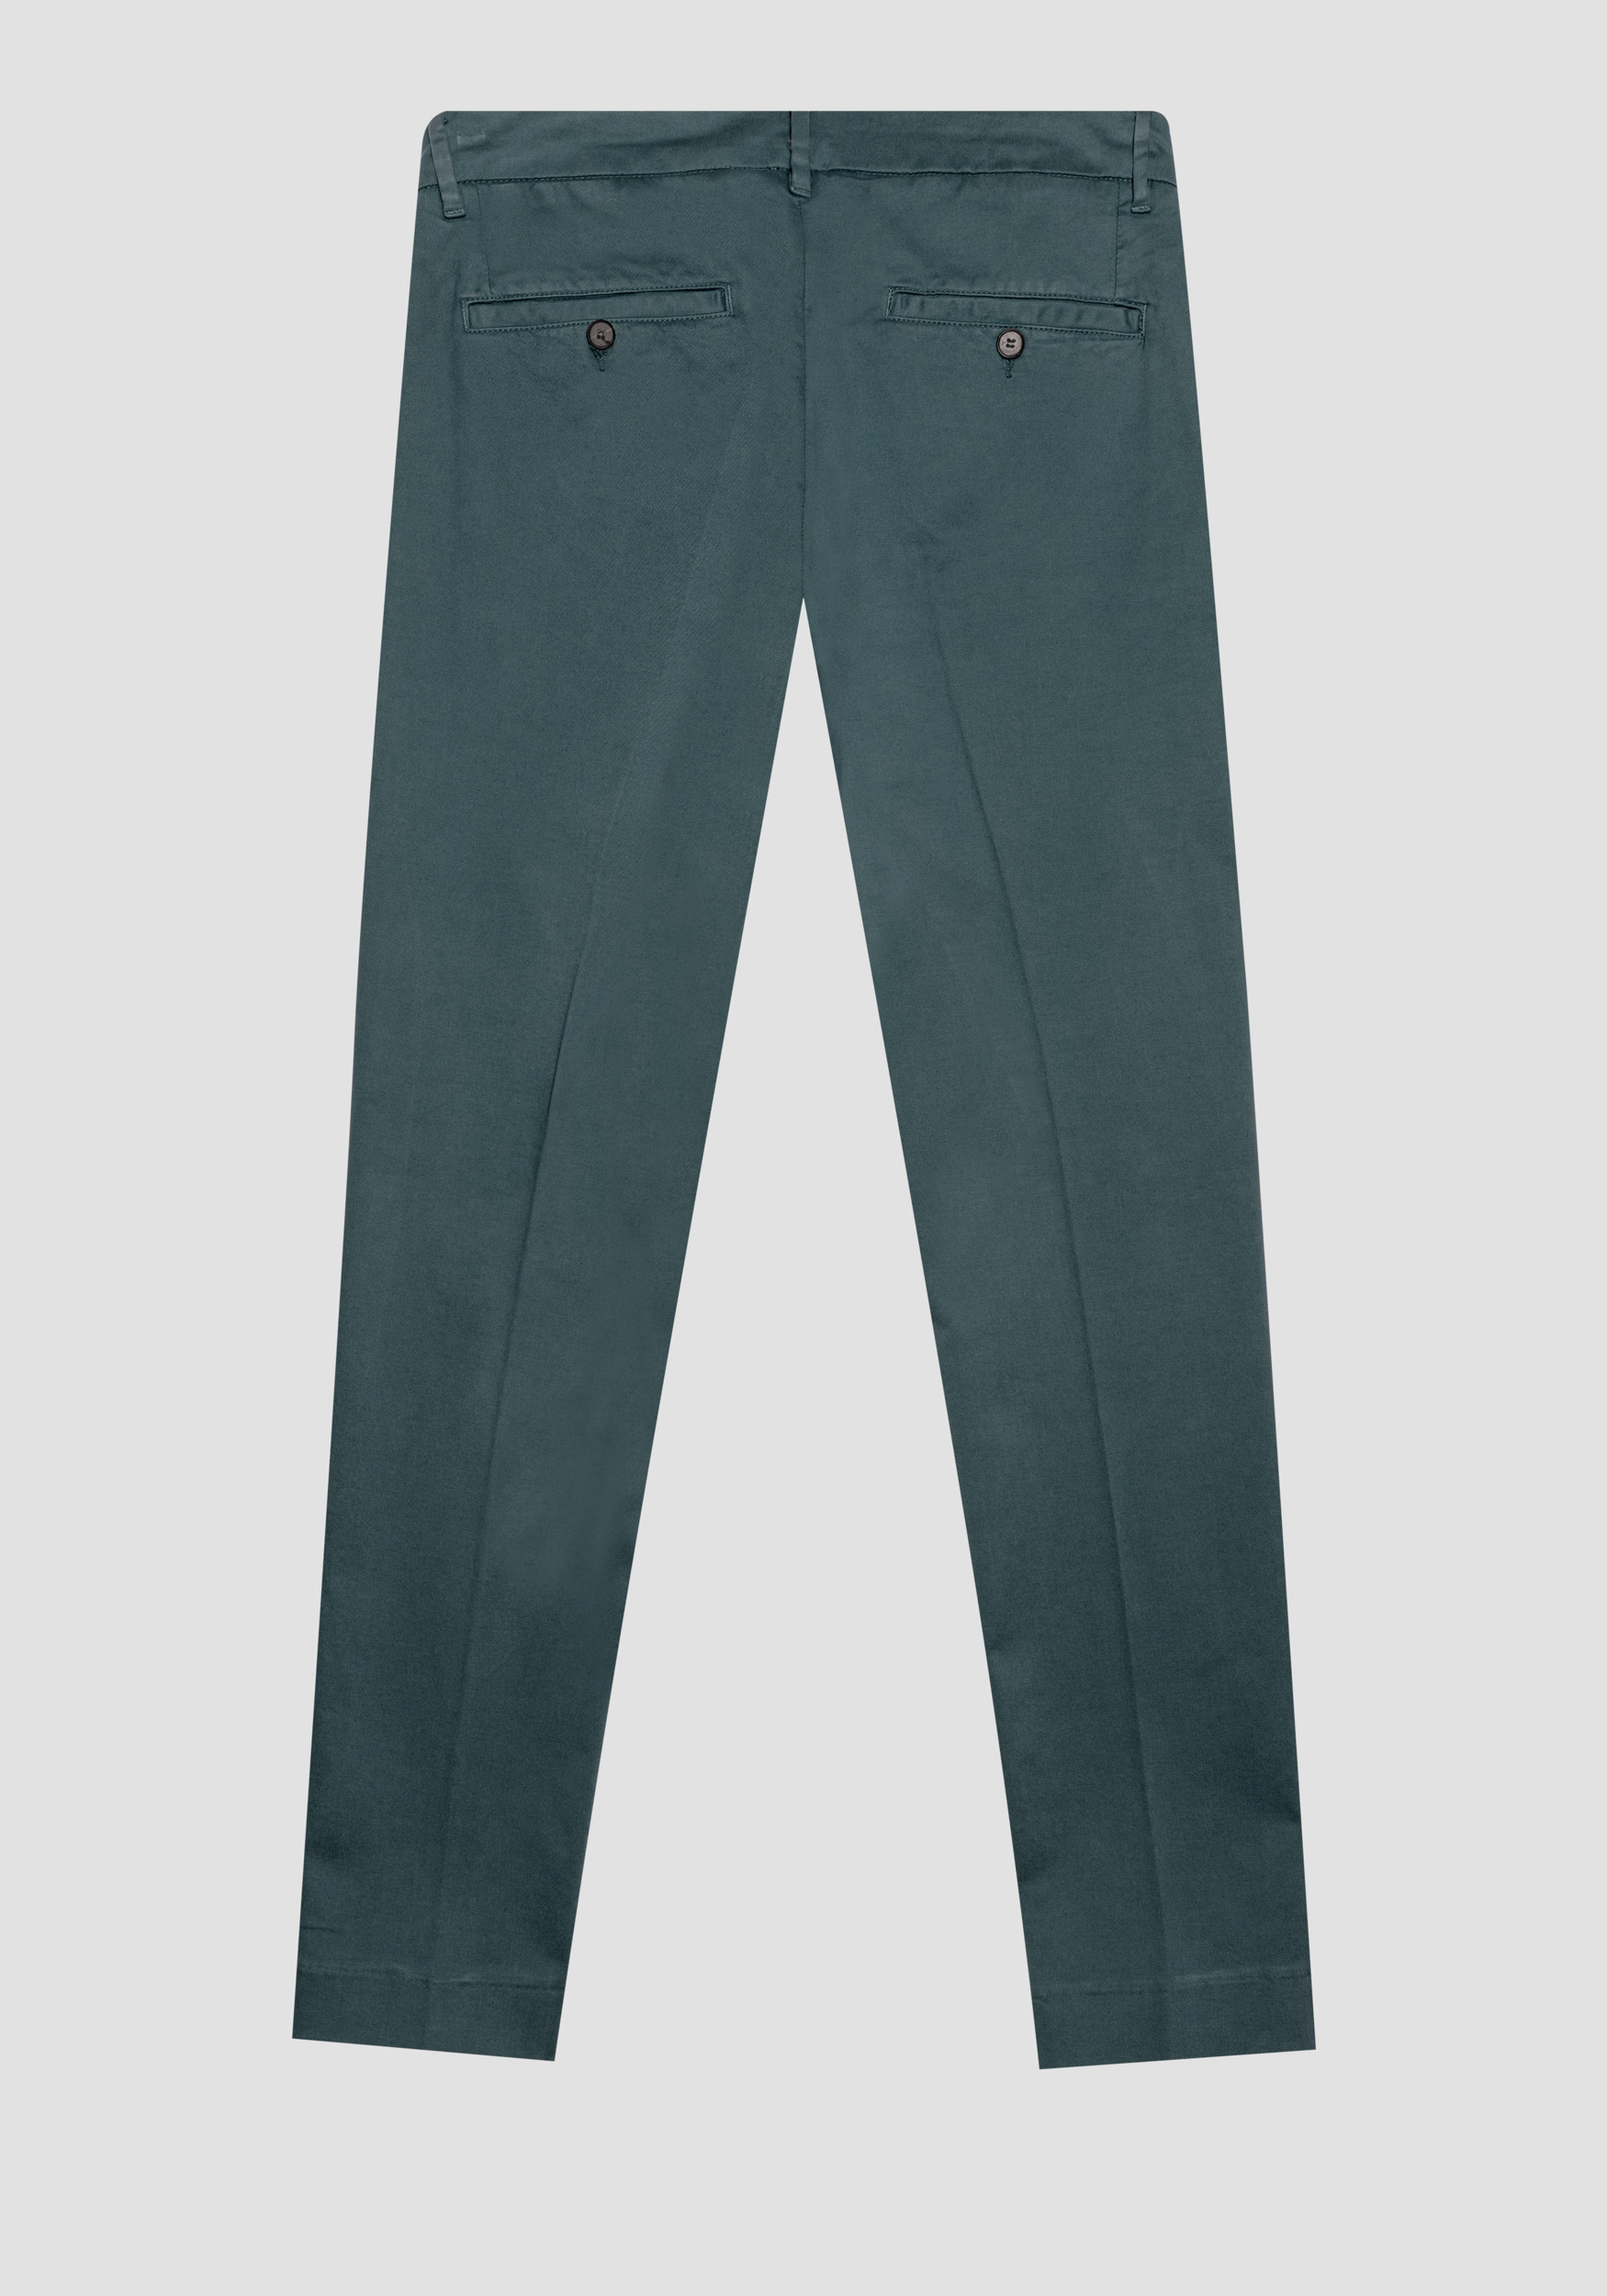 Antony Morato Pantalon Skinny Fit Bryan En Coton Doux Elastique Micro-Armure Bouteille Verte | Homme Pantalons